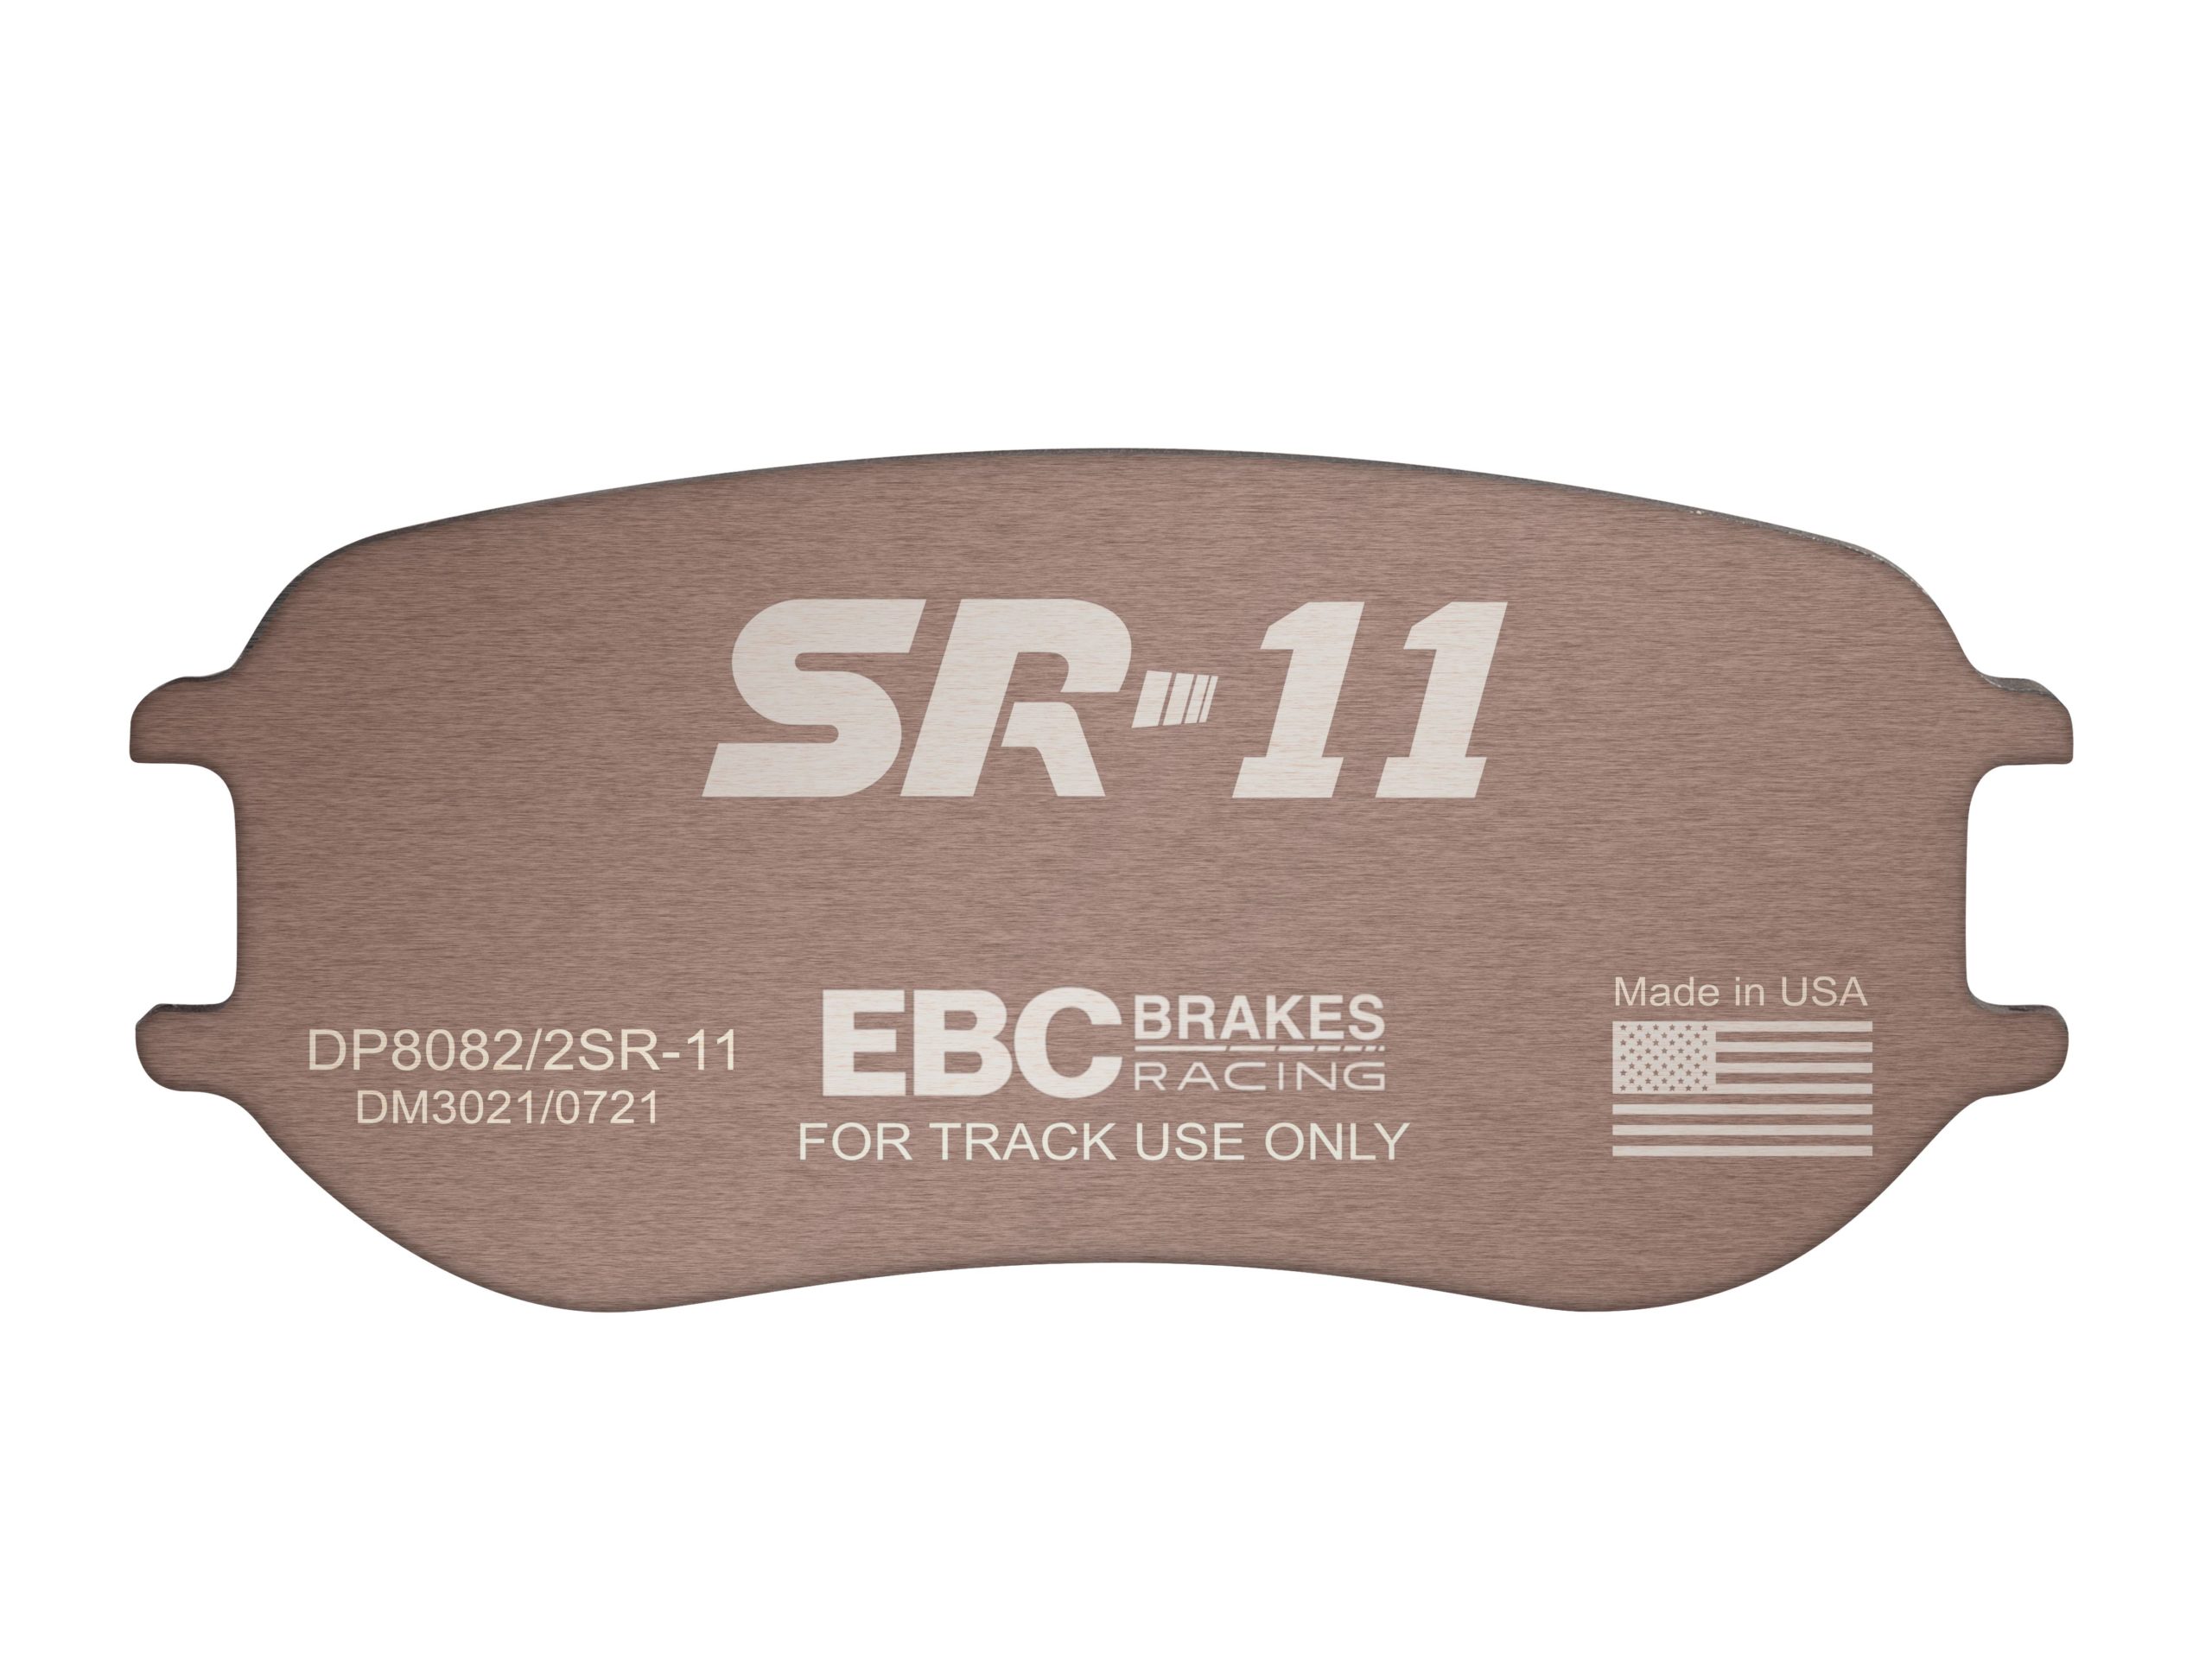 Sintered Brake Pads for Race Cars - EBC Brakes